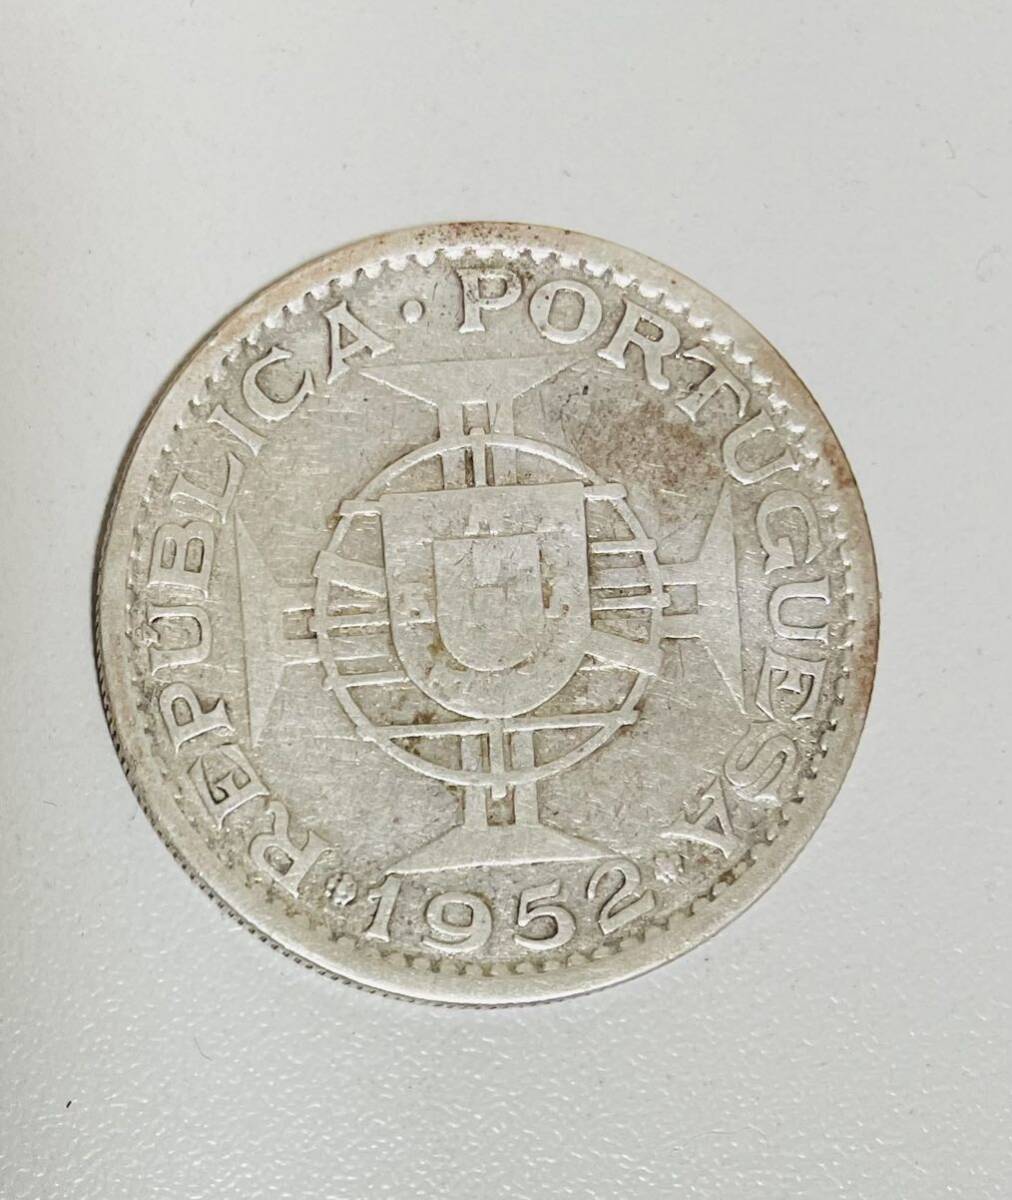 ポルトガル領 モザンビーク銀貨 1955年 20エスクード ヴィンテージコイン 希少品の画像2